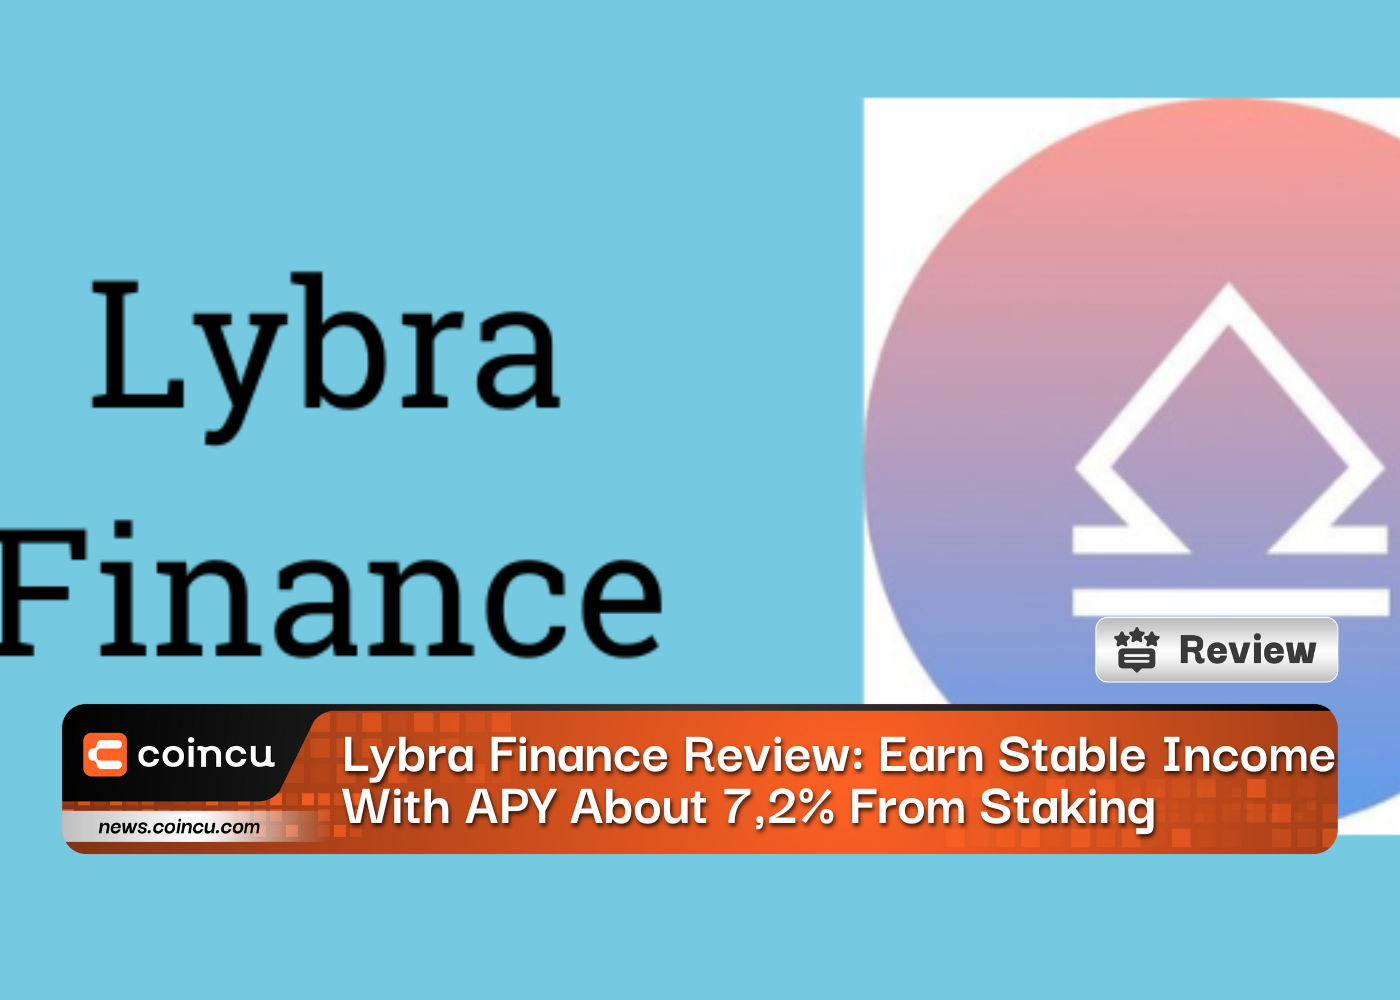 Lybra Finance Review: obtenga ingresos estables con APY alrededor del 7,2% de la participación